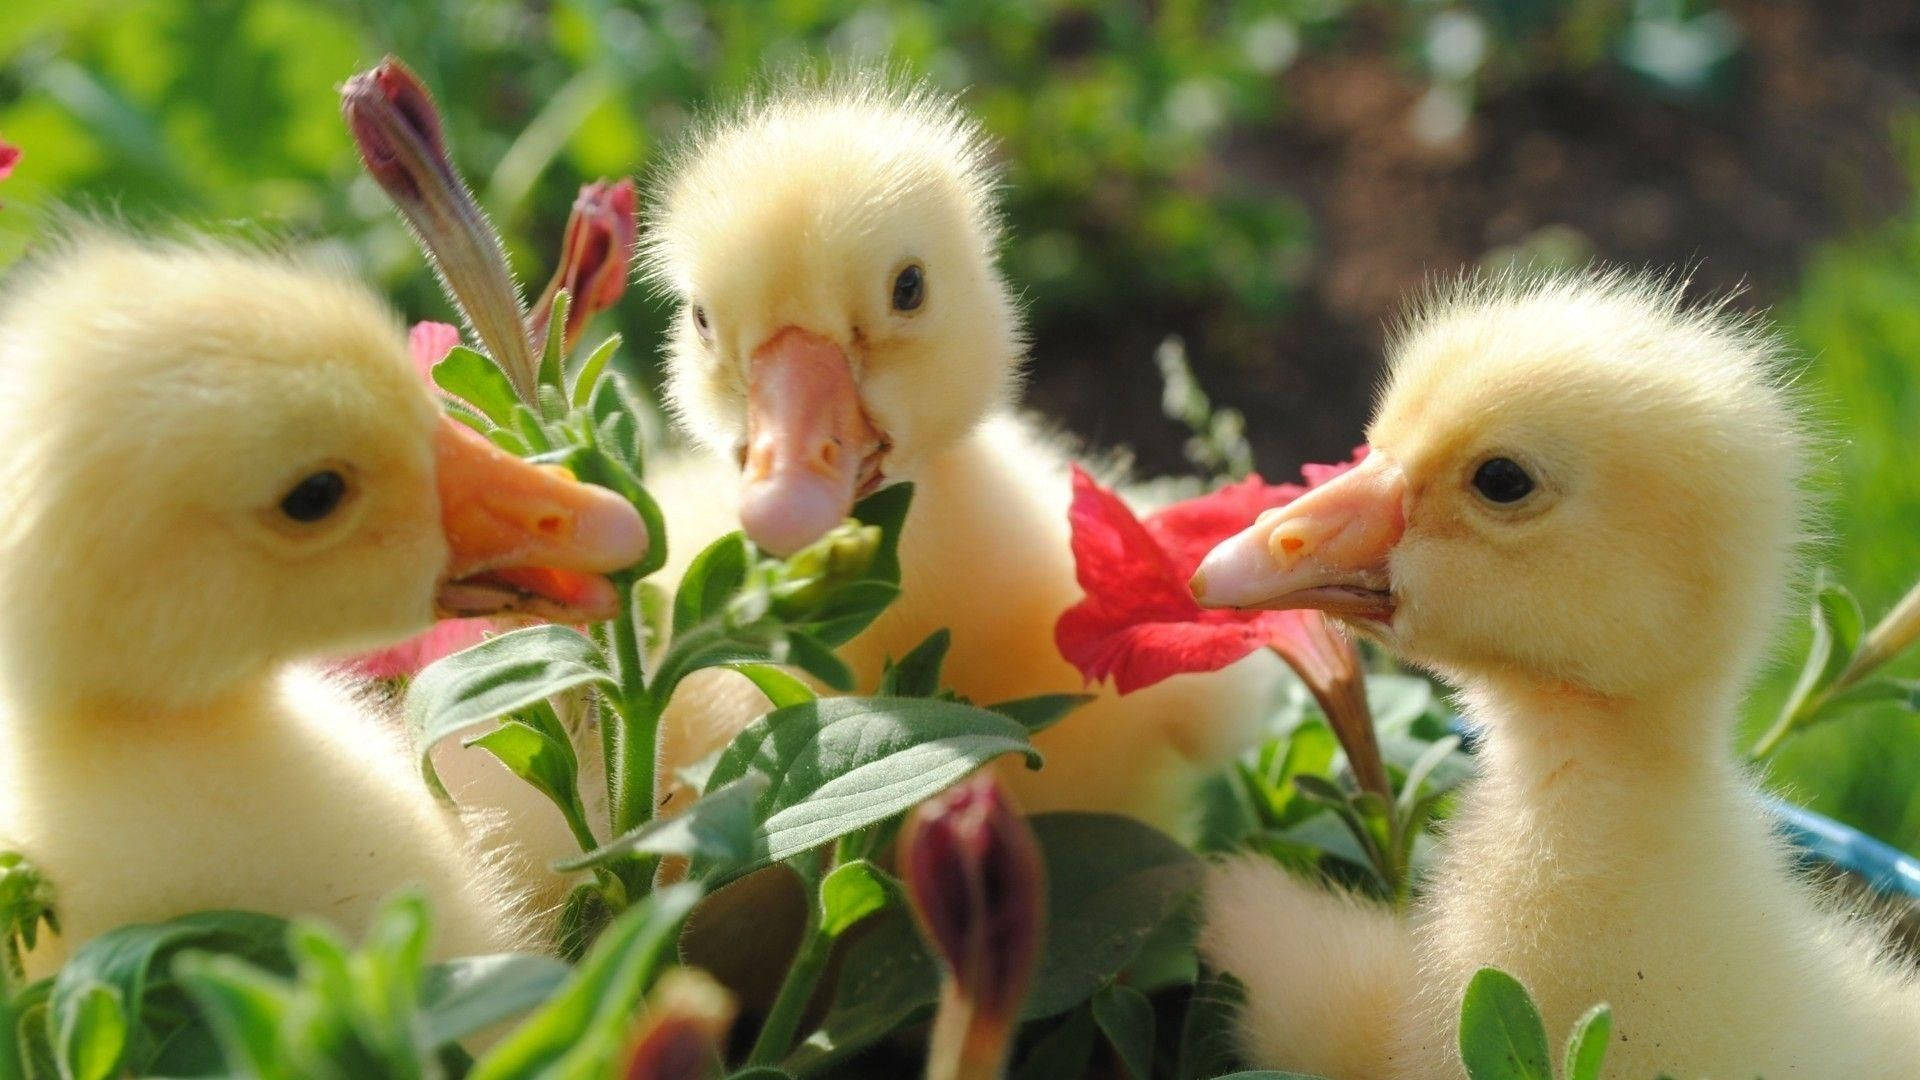 Baby Ducks Flowers